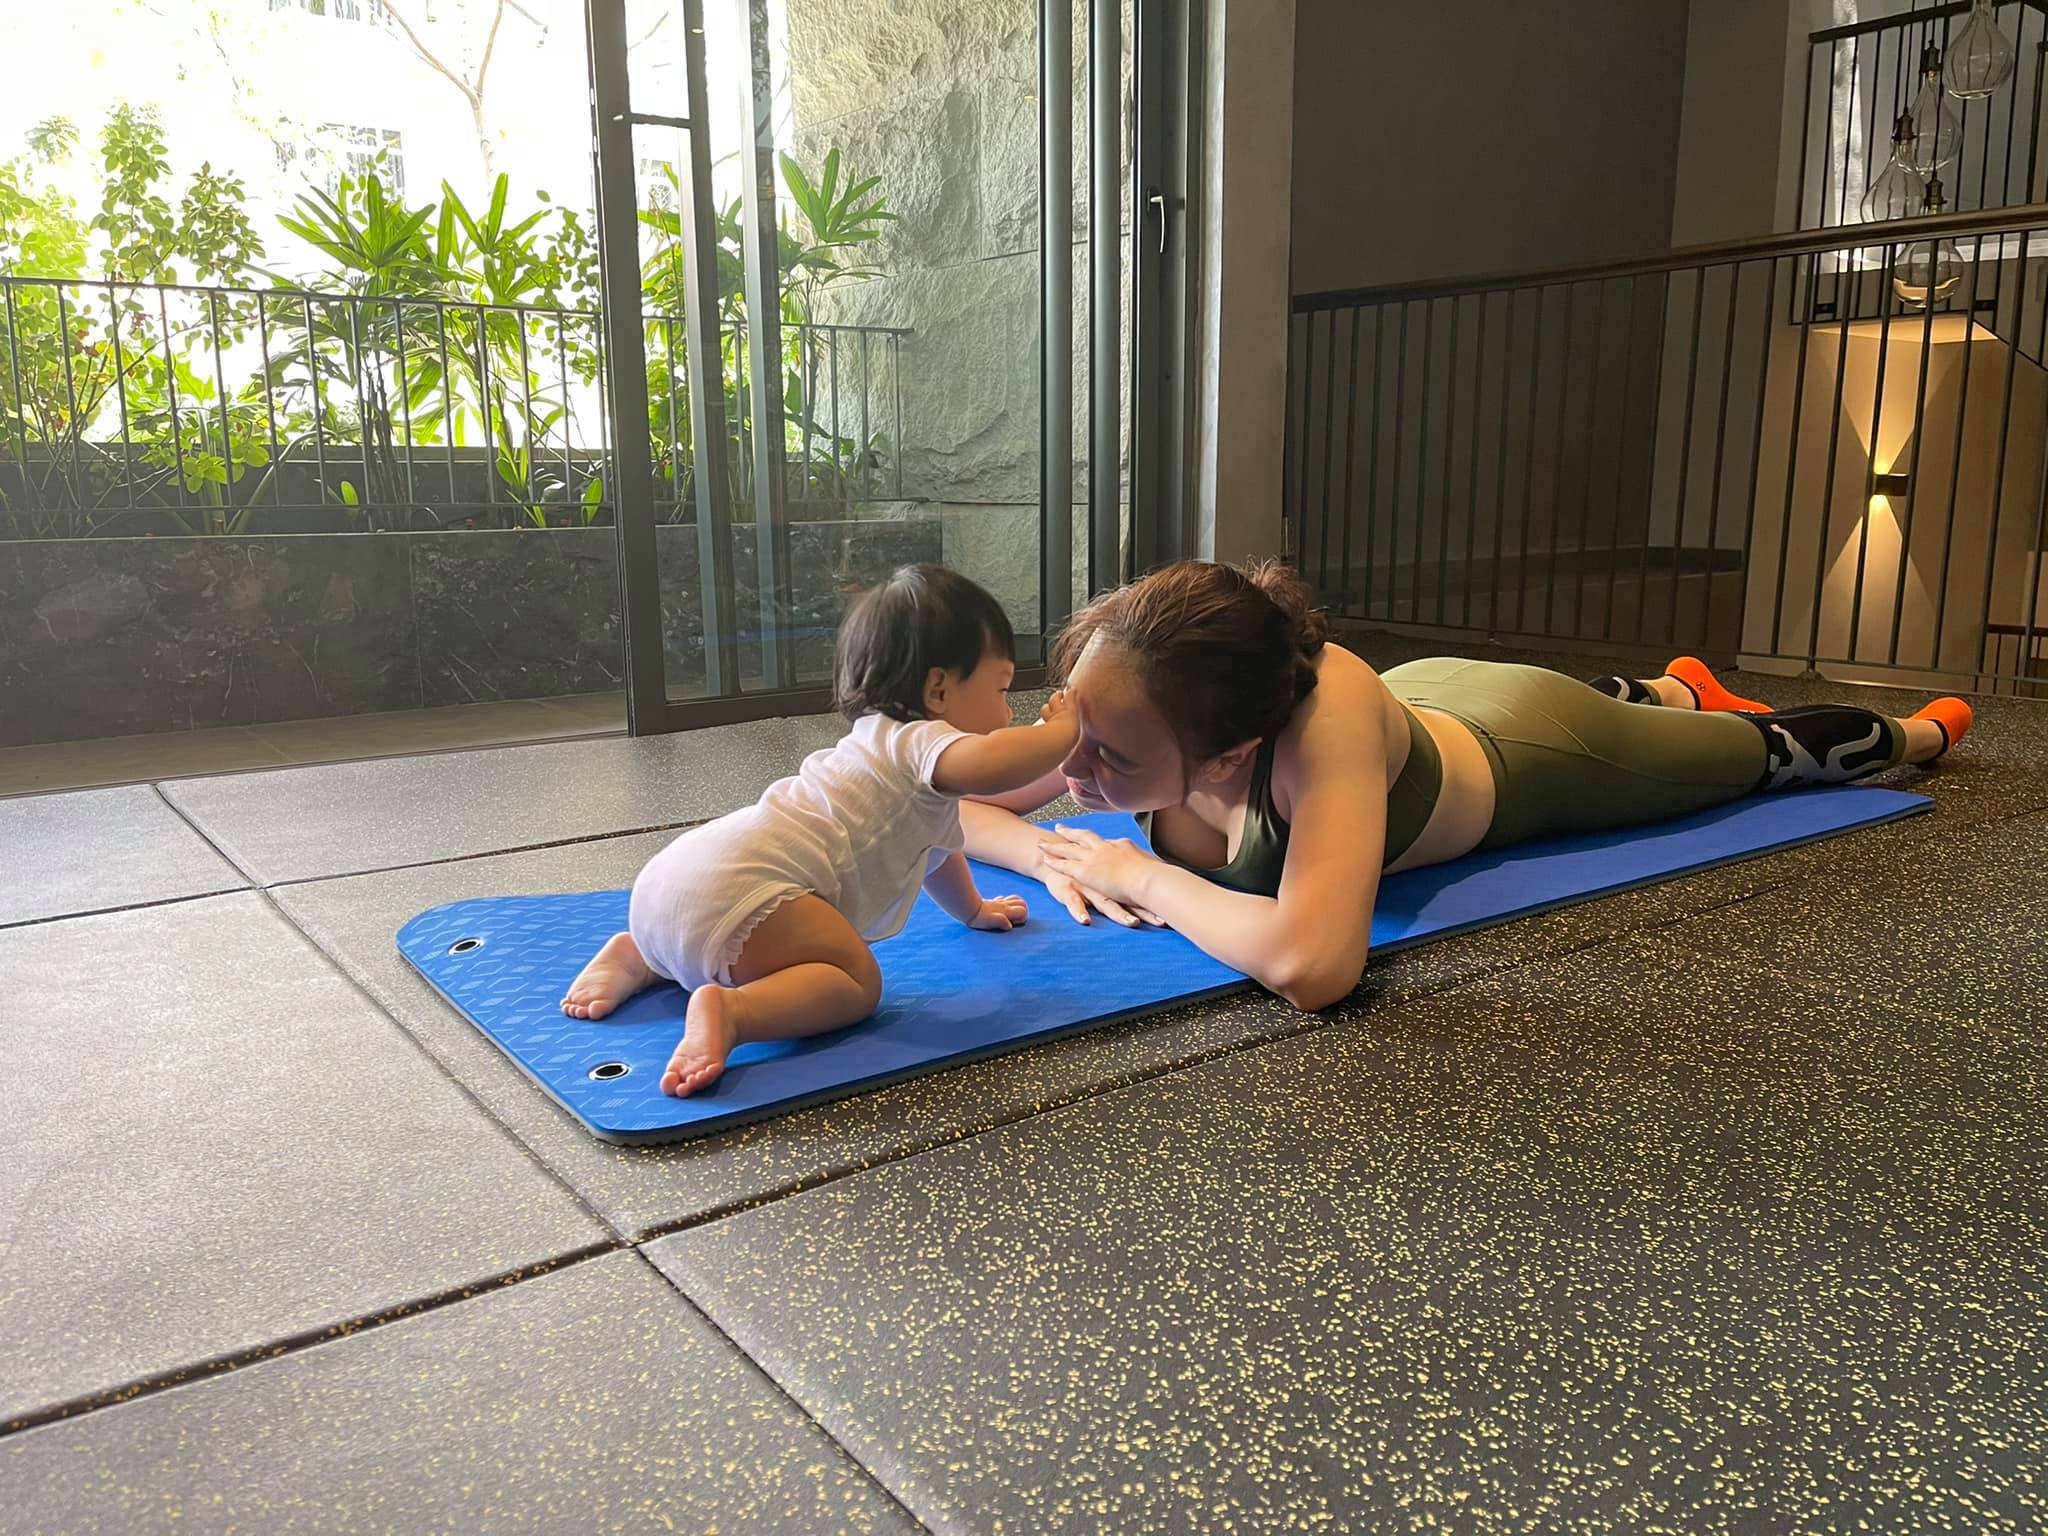 Con gái Đàm Thu Trang mới có từng tuổi đã biết tập yoga cùng mẹ, Cường Đô La tiết lộ vai trò phía sau? - ảnh 1